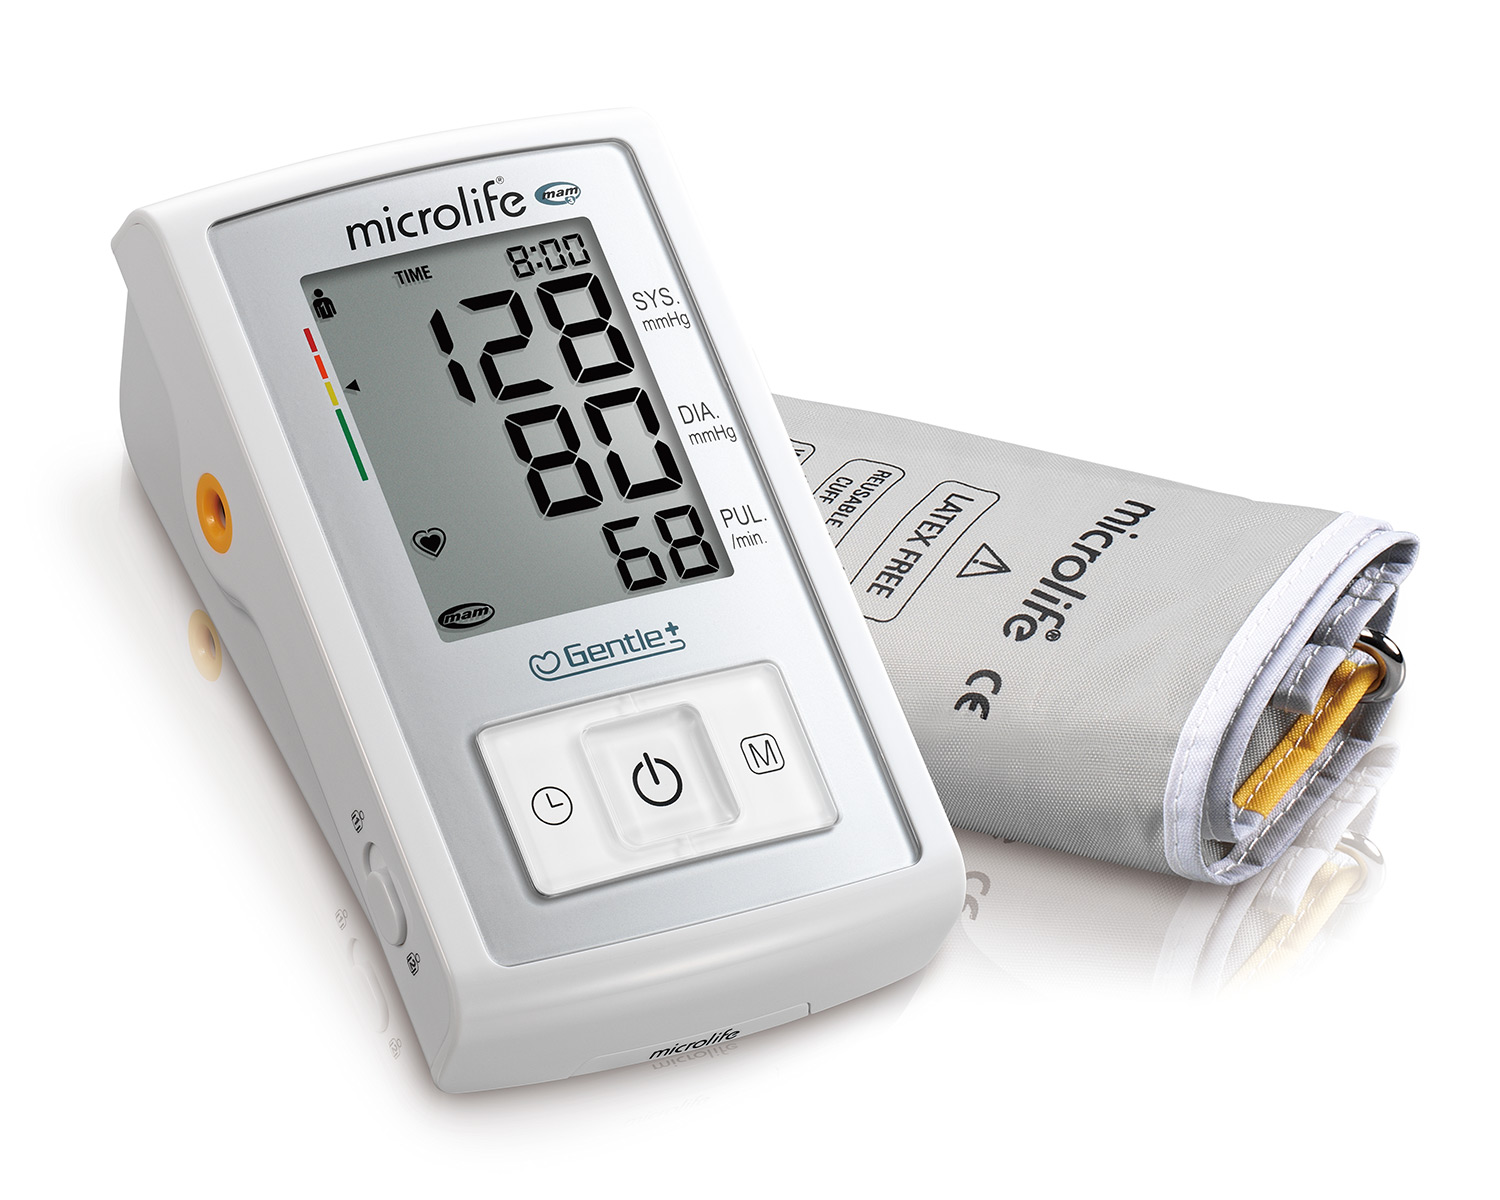 Kako mjeriti krvni tlak? - PLIVAzdravlje